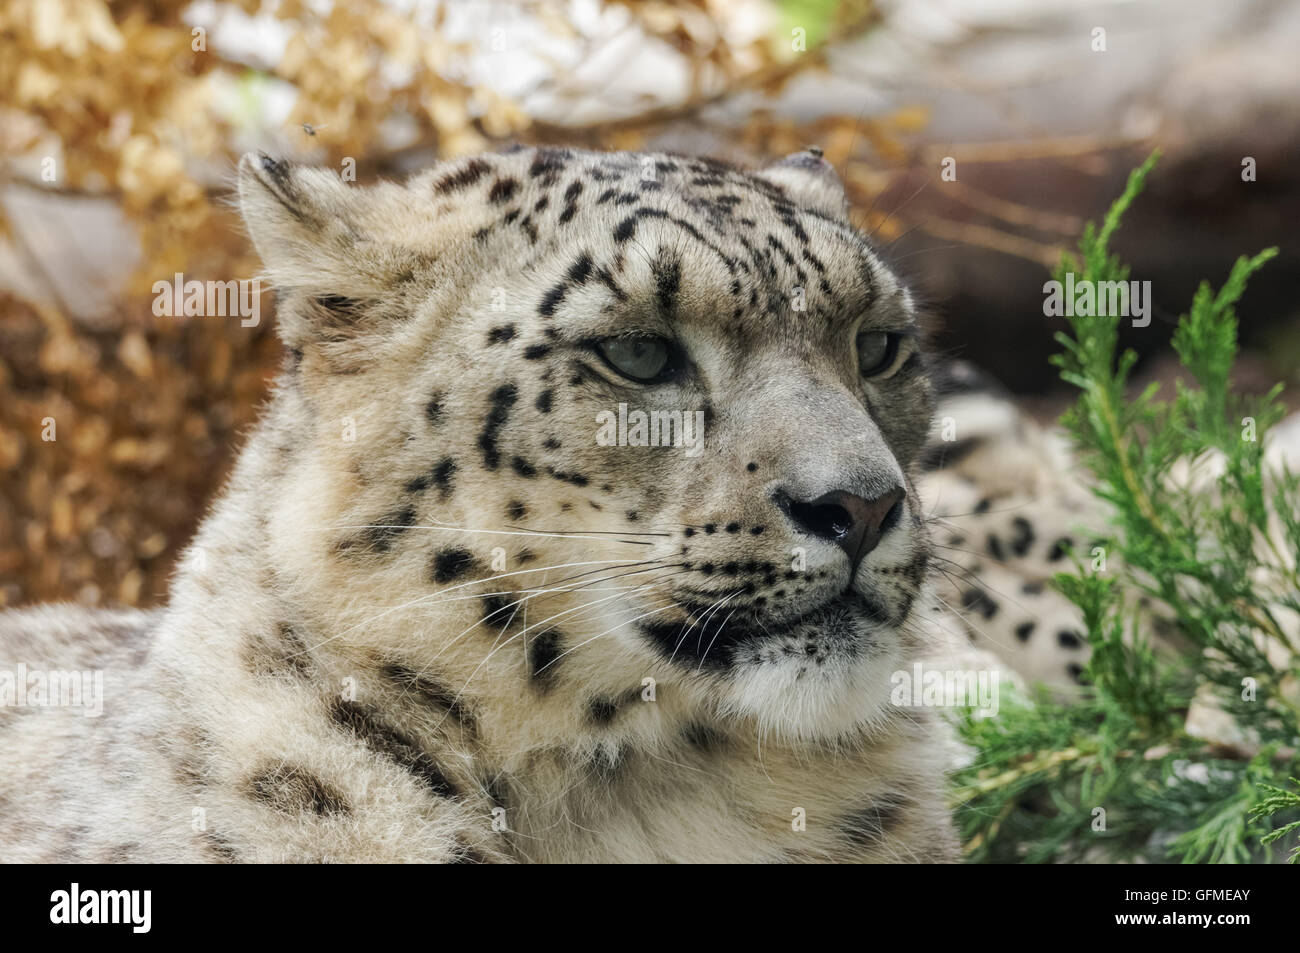 close up portrait of snow leopard Stock Photo